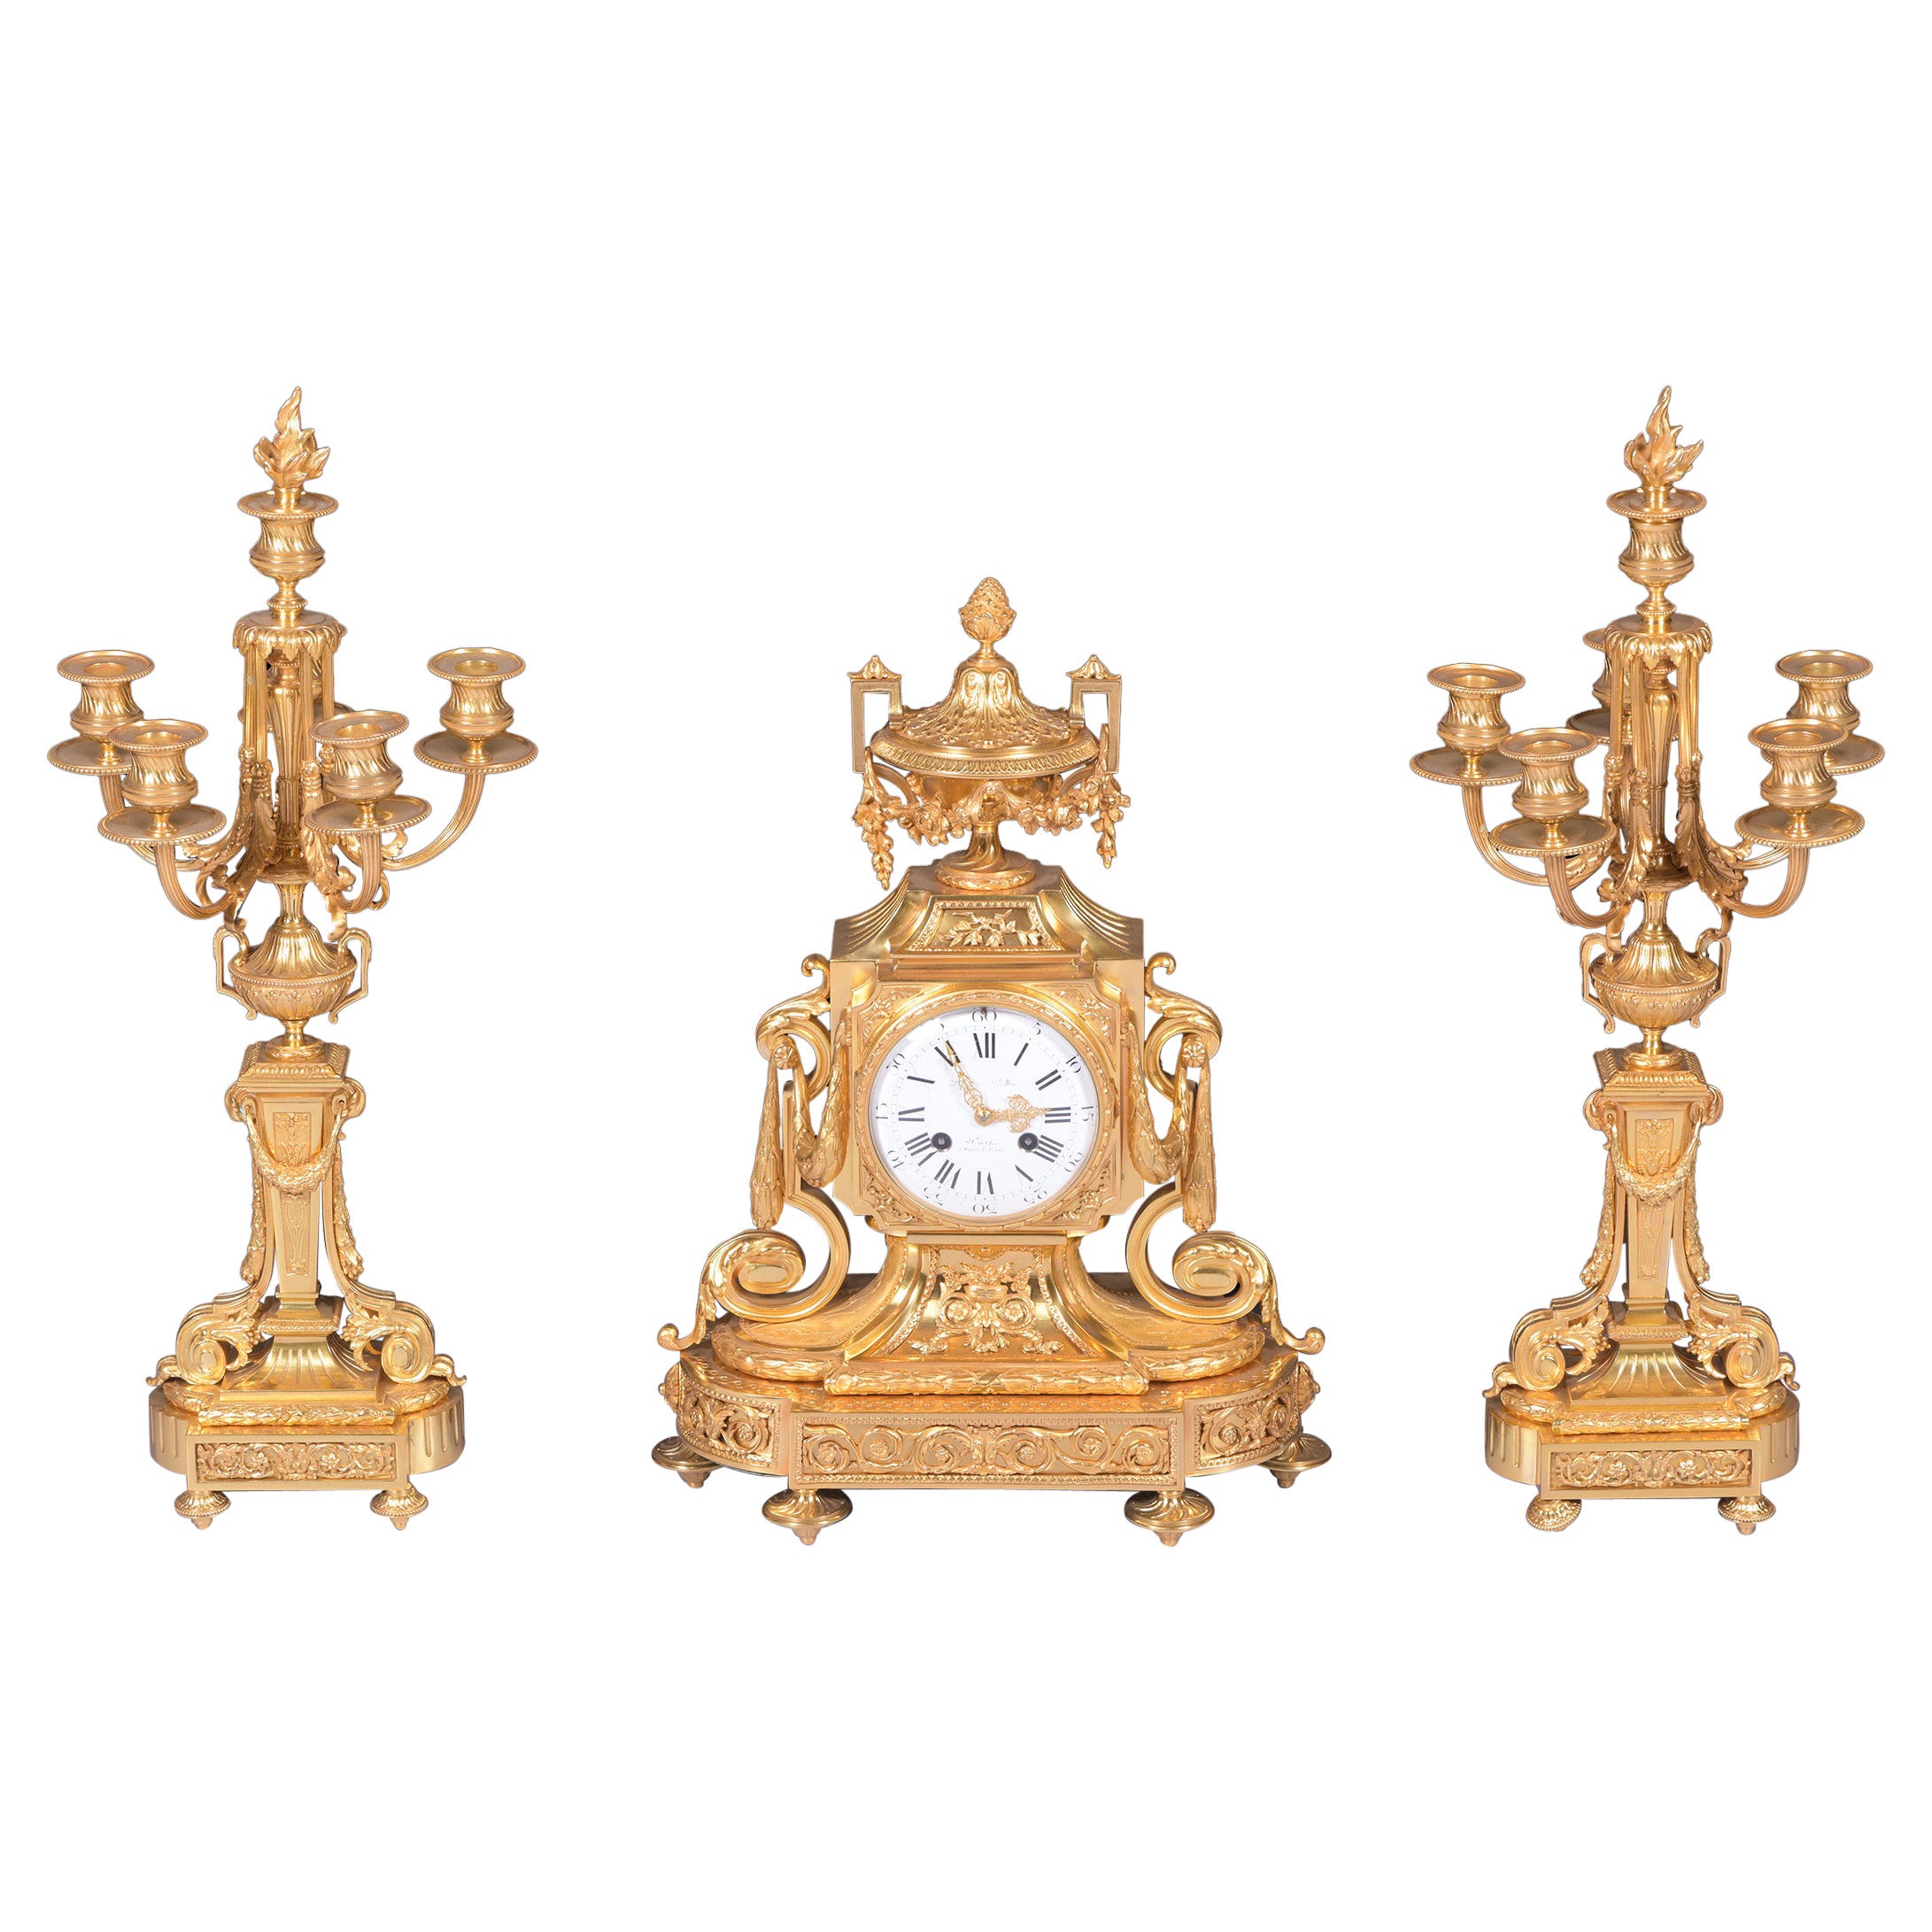 Garniture d'horloge de style néoclassique français du 19ème siècle en bronze doré